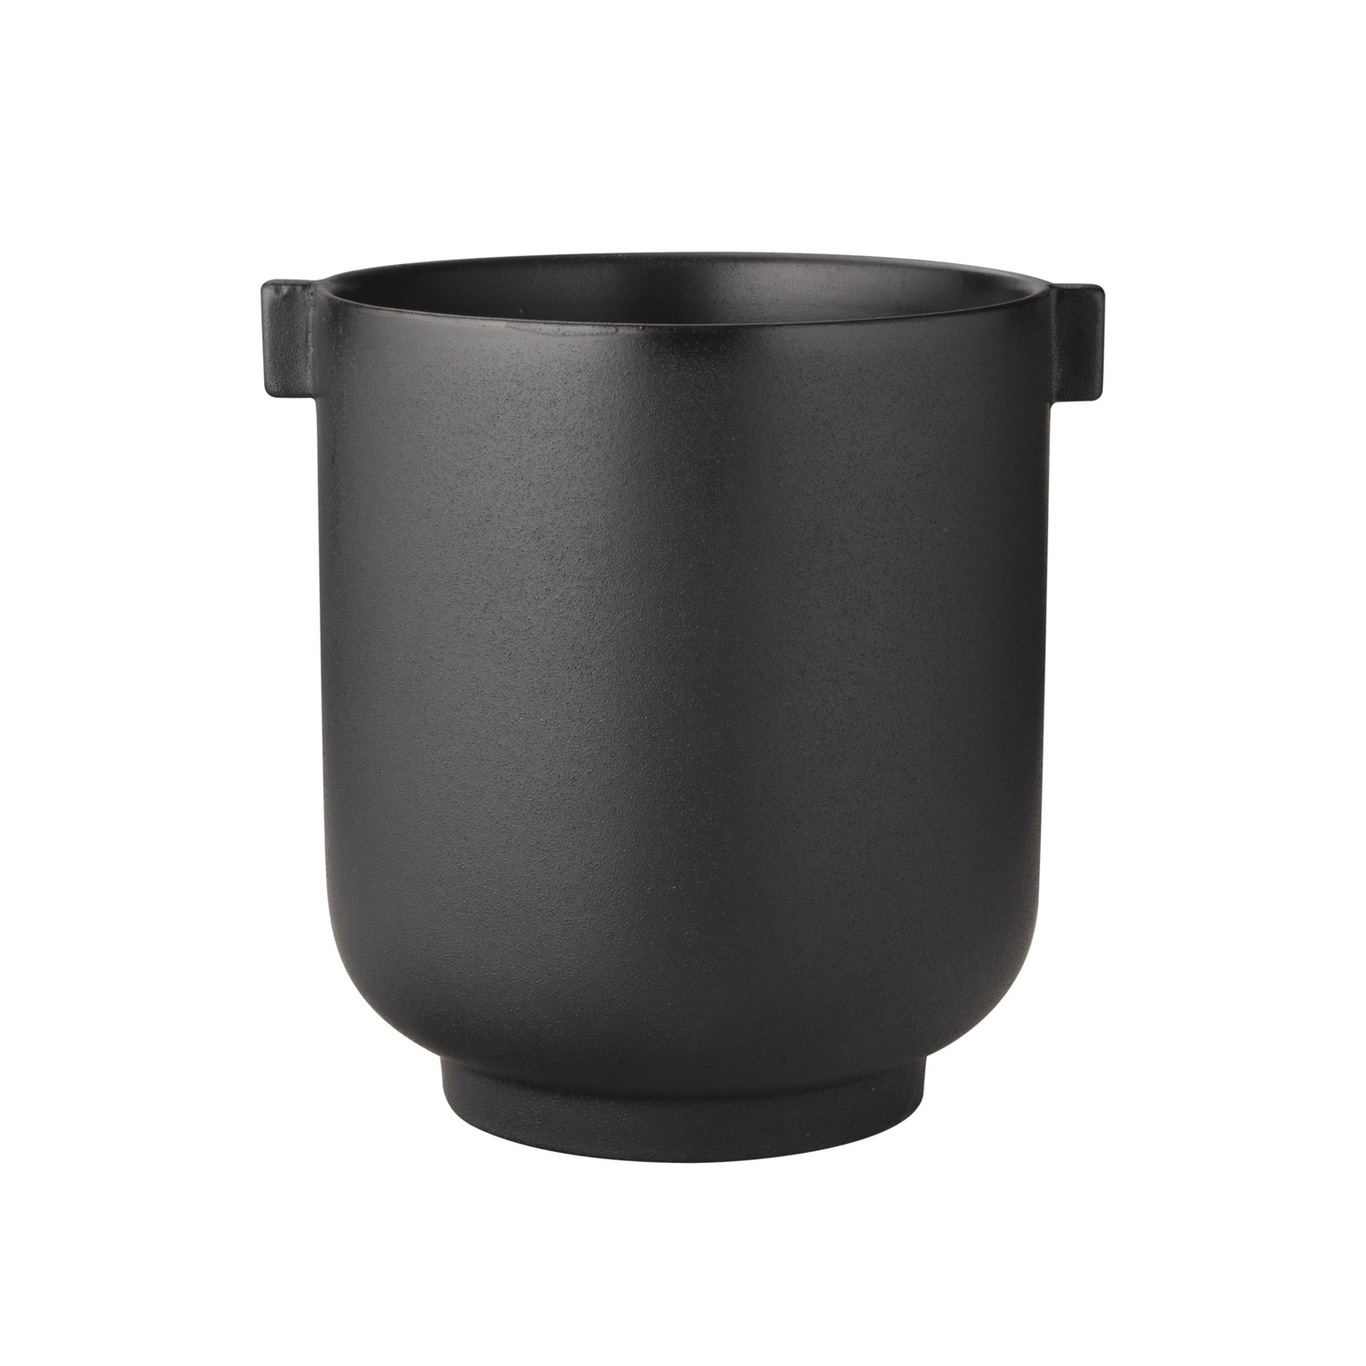 Pot With Ear H22.5 cm, Black